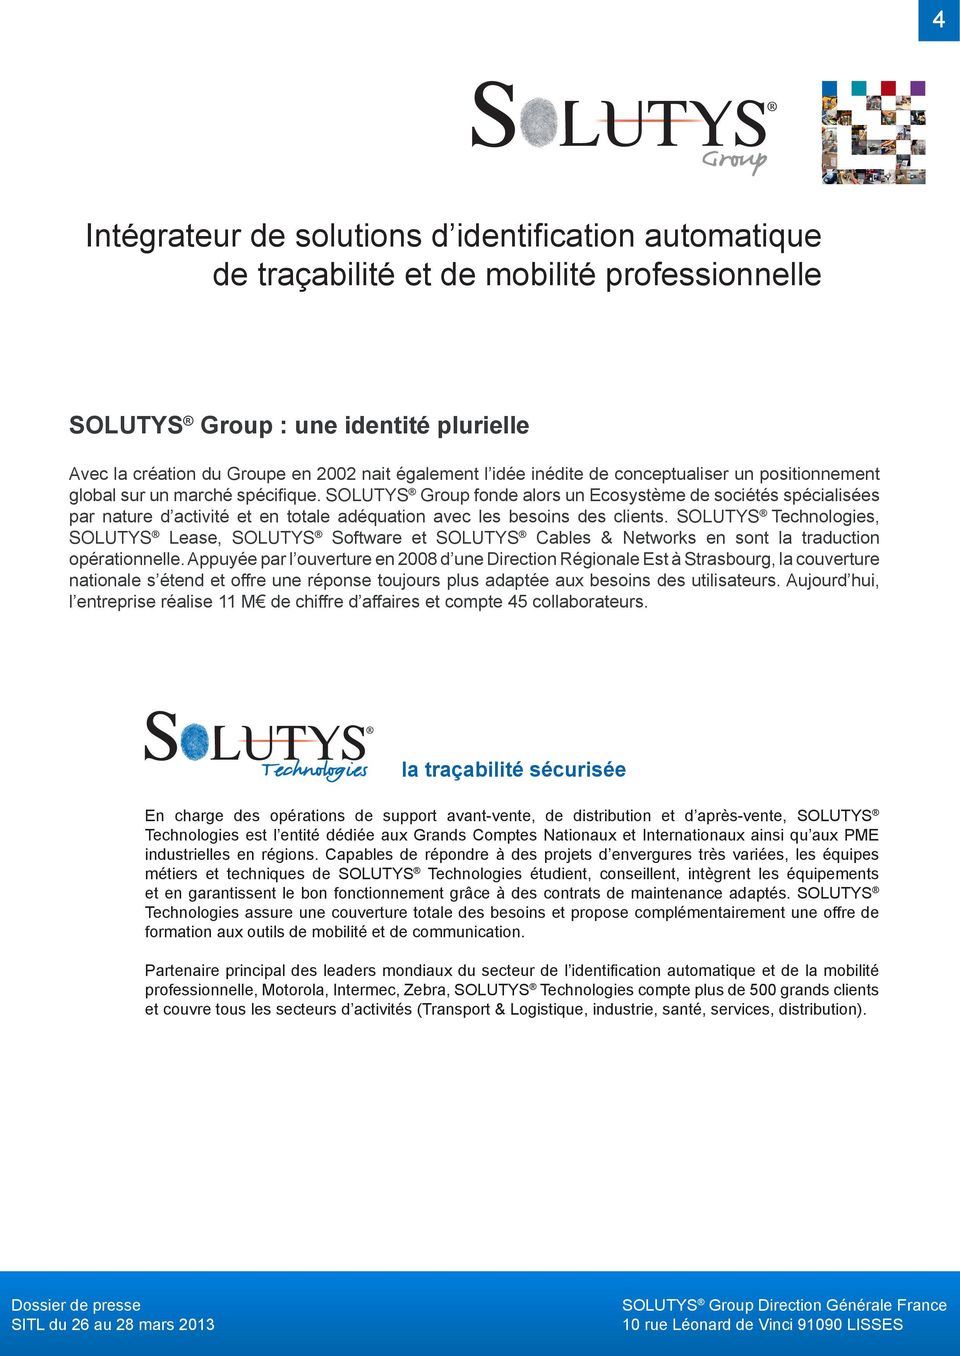 SOLUTYS Technologies, SOLUTYS Lease, SOLUTYS Software et SOLUTYS Cables & Networks en sont la traduction opérationnelle.